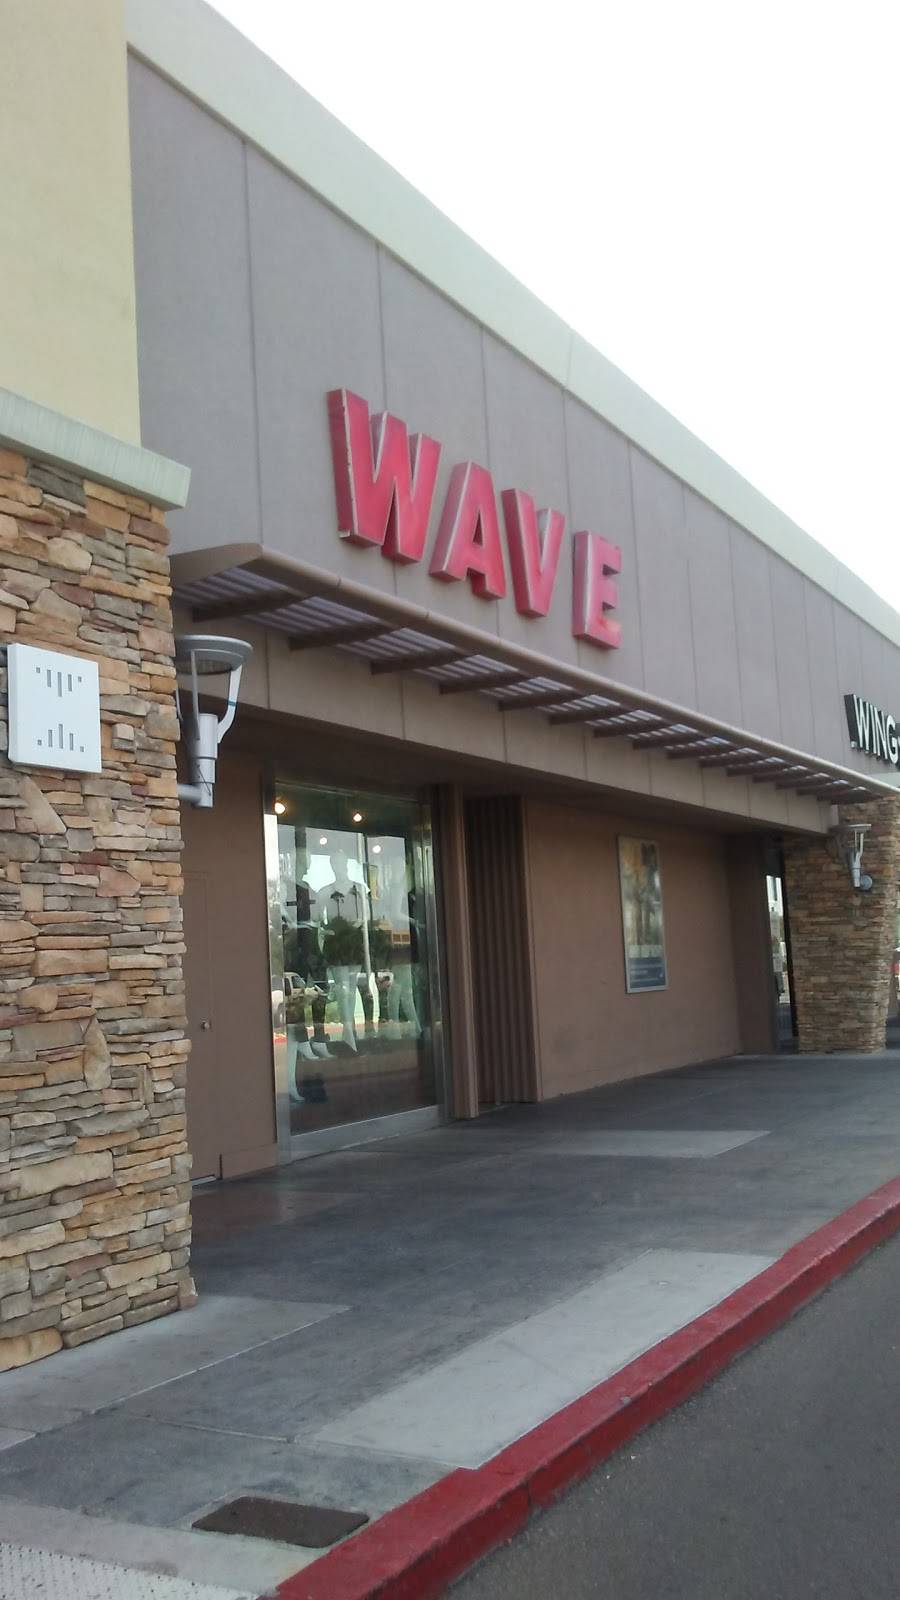 Wave | Phoenix, AZ 85015, USA | Phone: (602) 841-7531